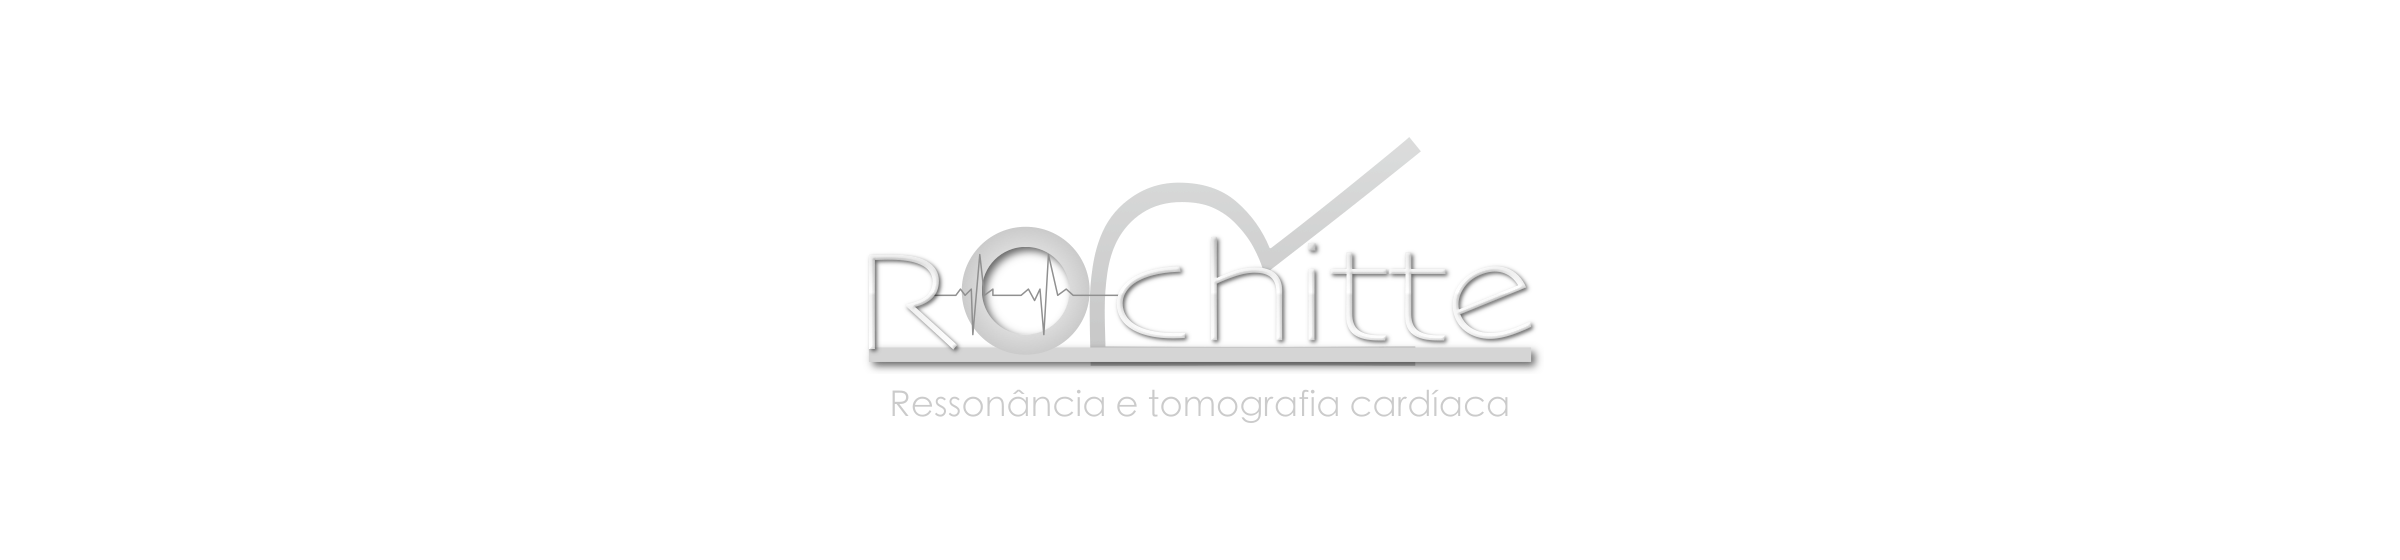 Dr. Carlos Rochitte